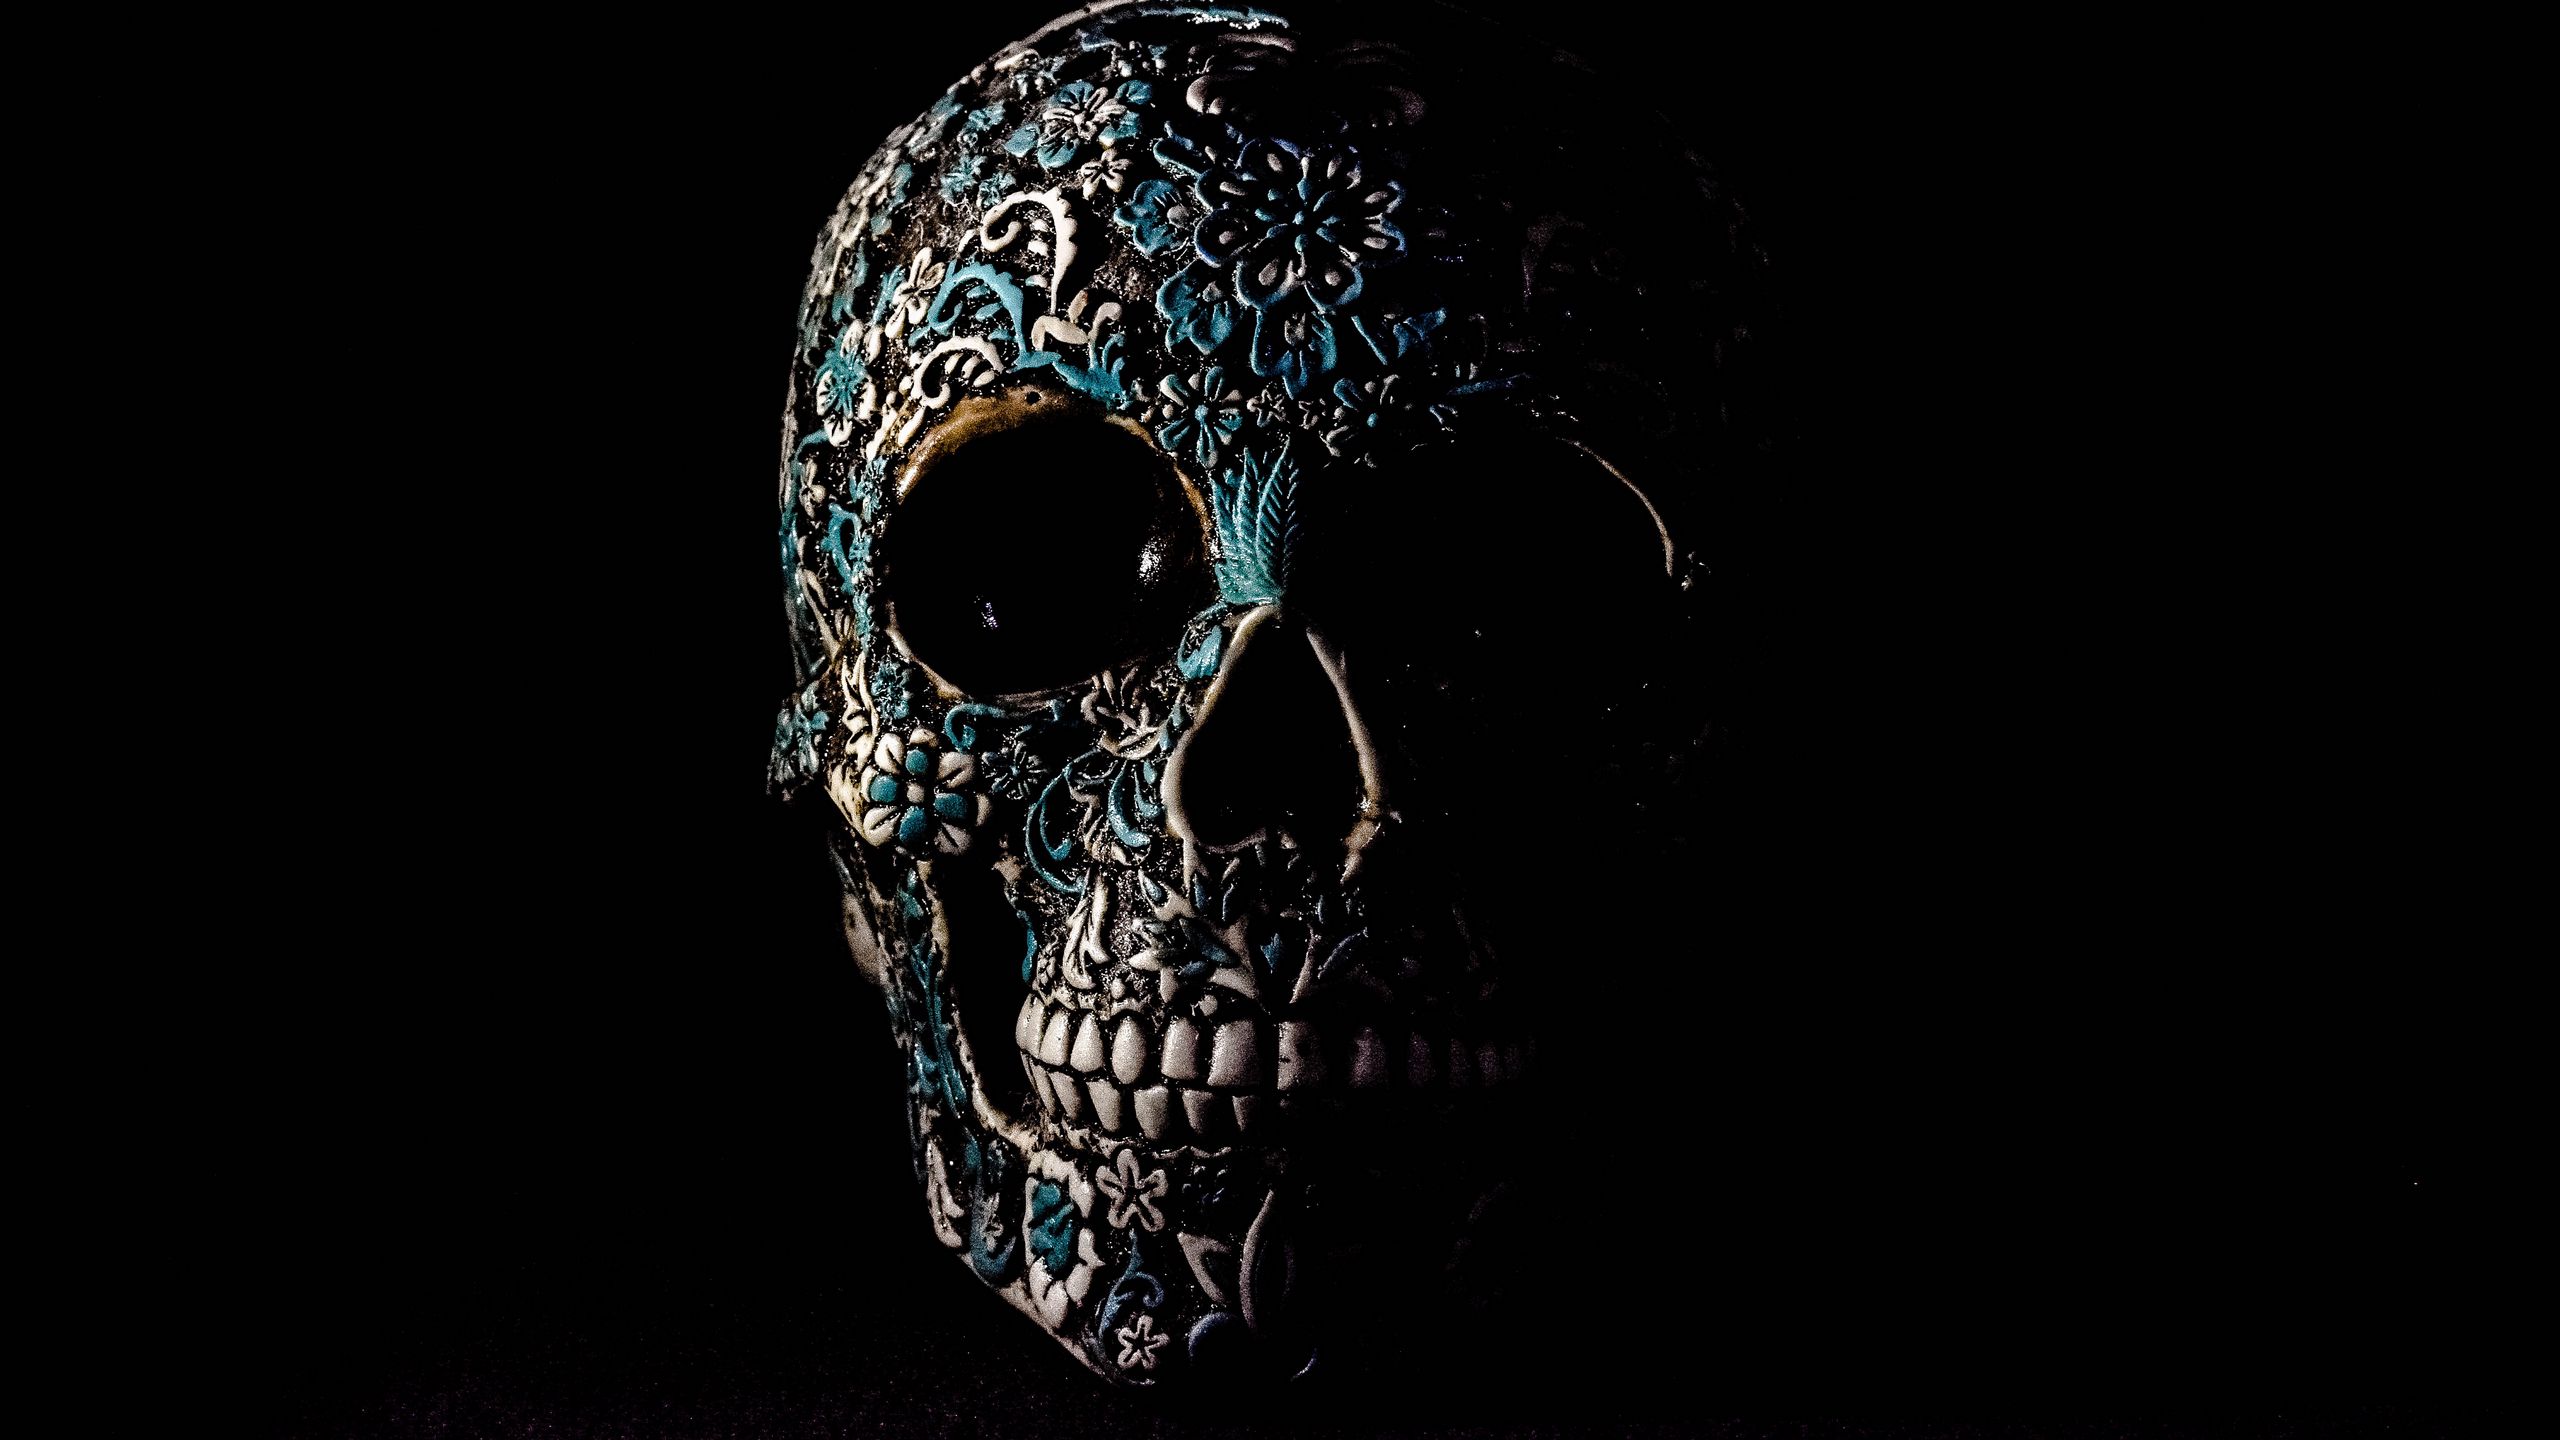 2560x1440 Wallpaper skull, dark, patterns, bones